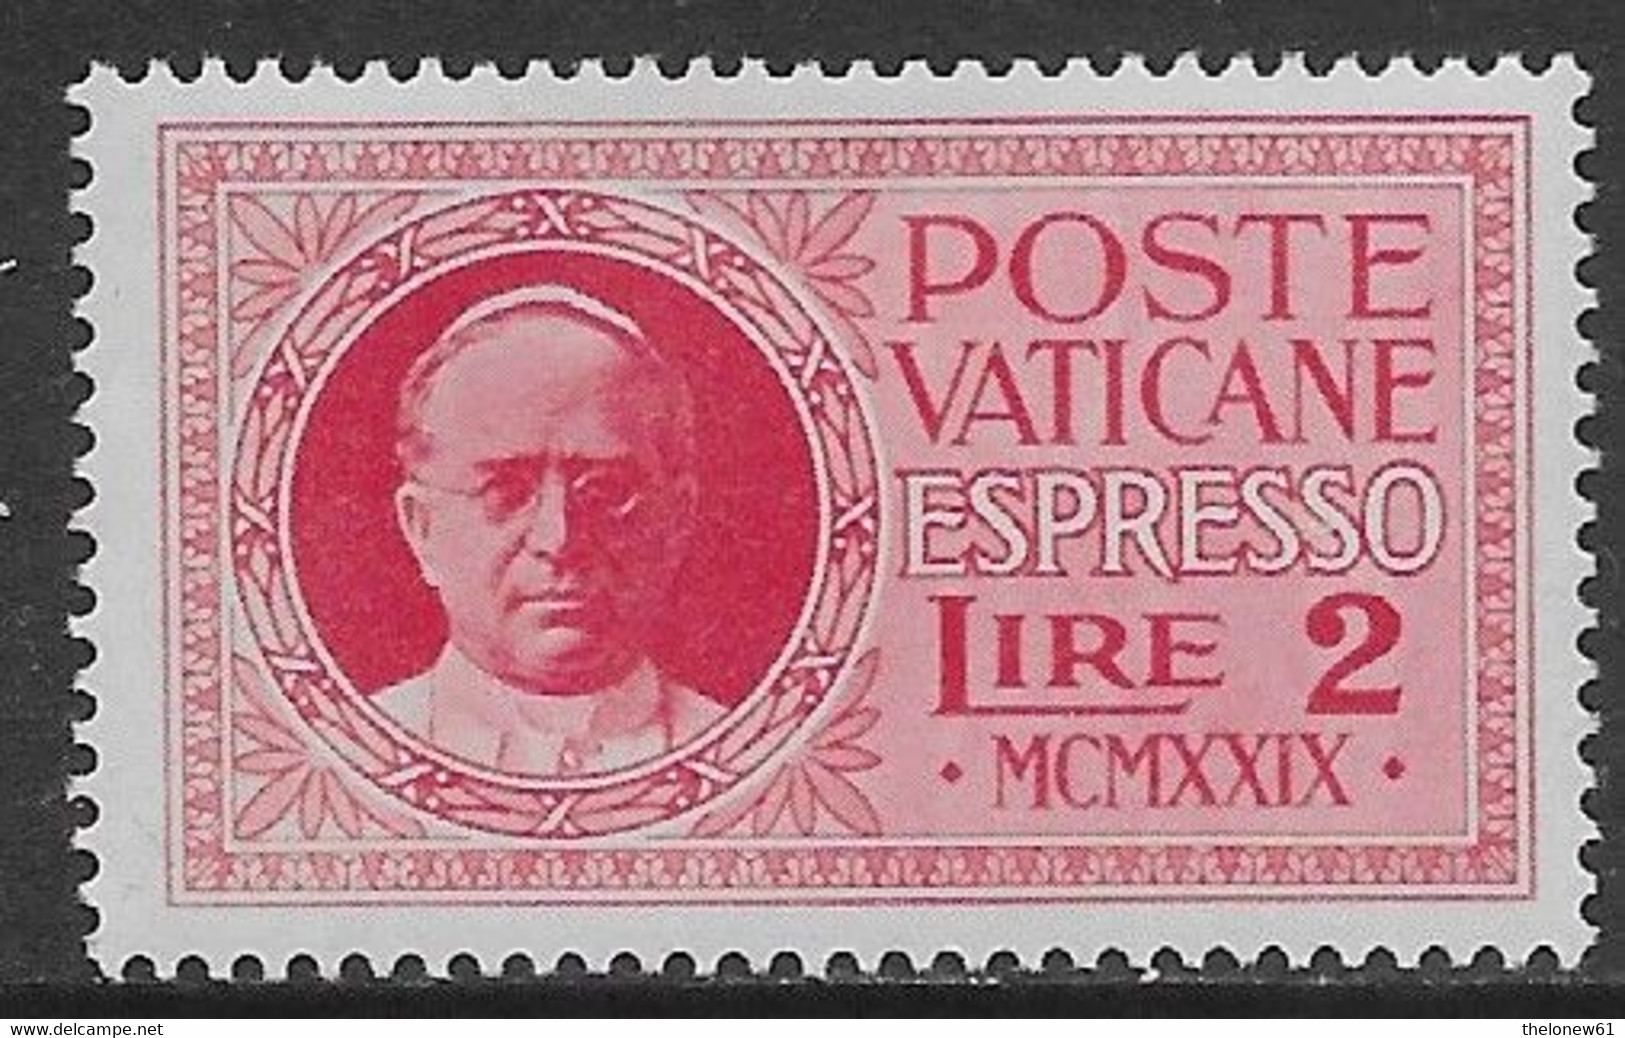 Vaticano Vatican 1929 Conciliazione Espresso L2 Sa N.E1 Nuovo MH * - Express